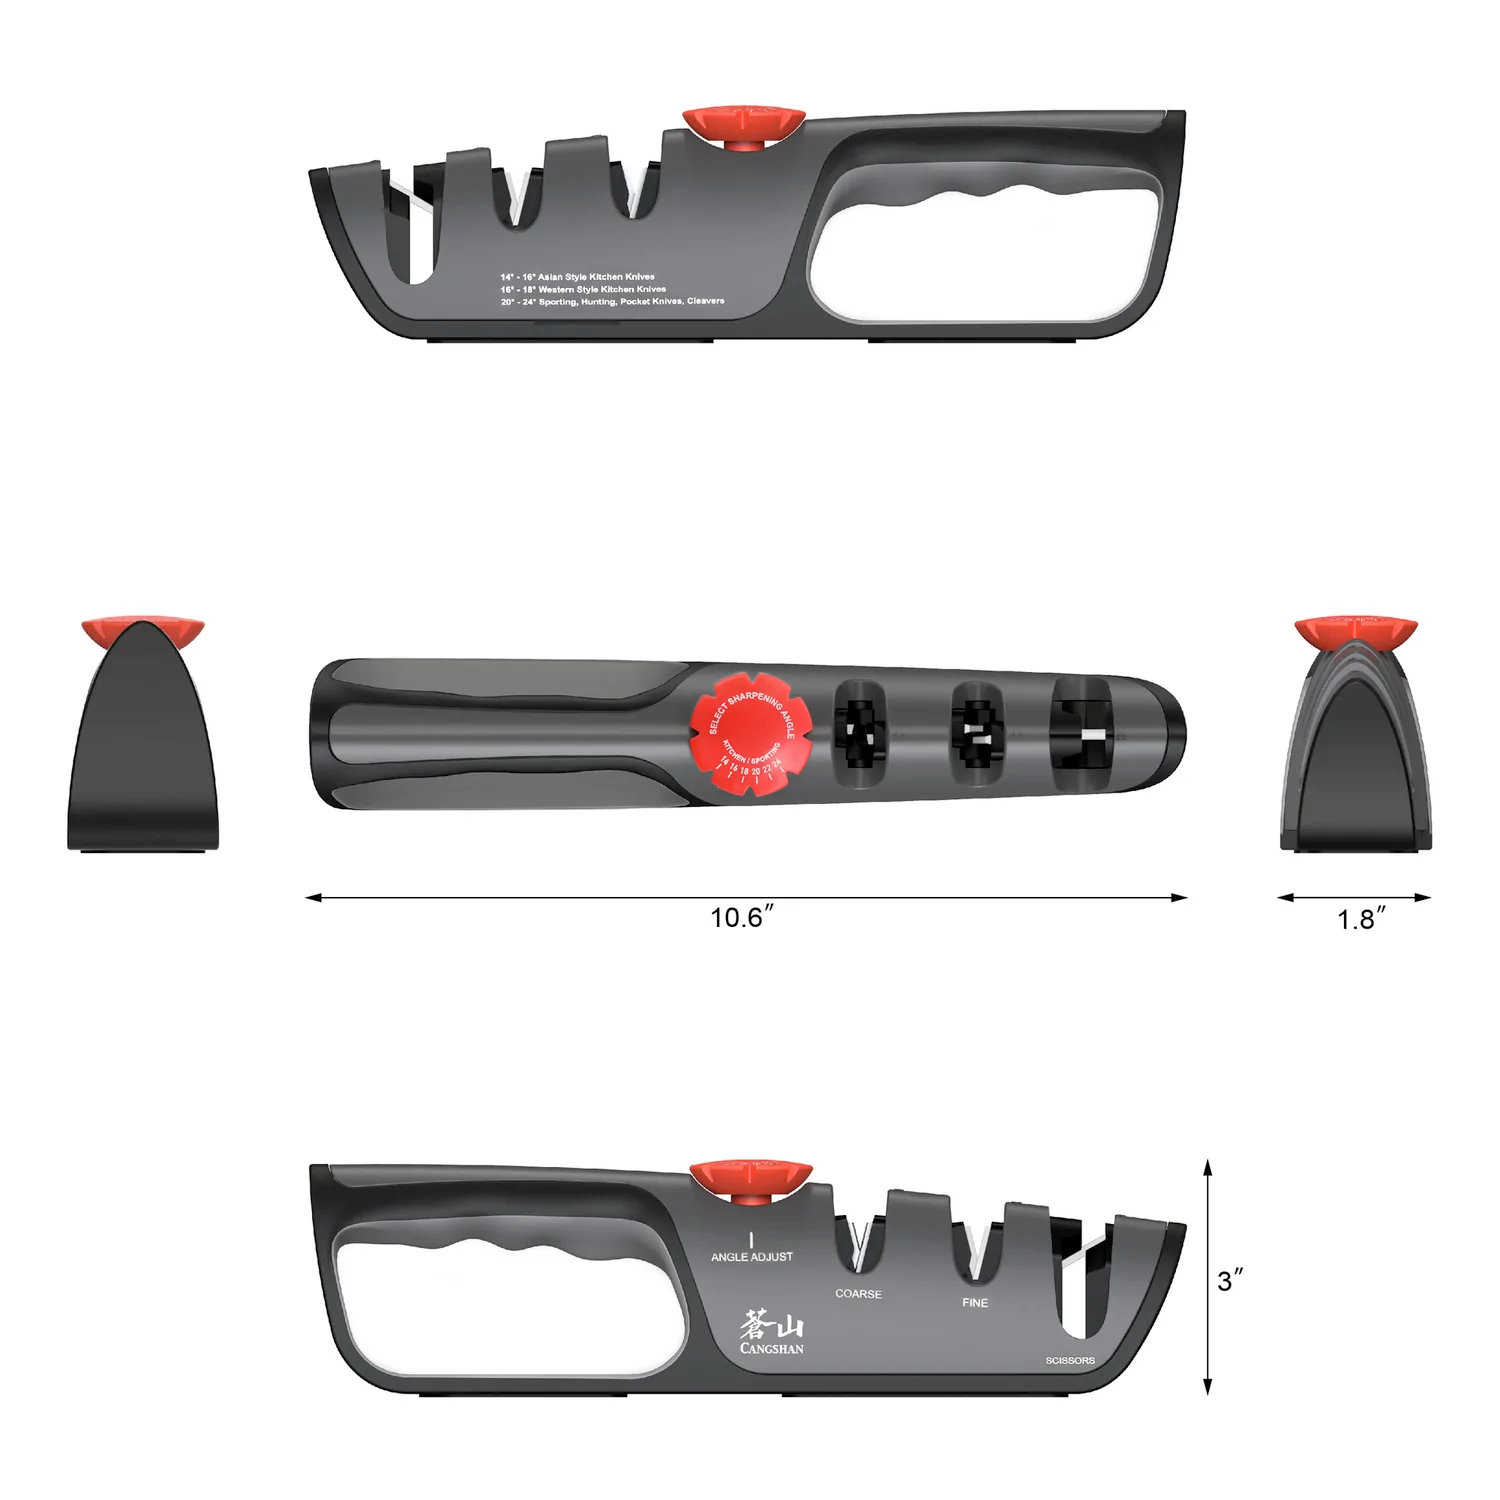 Cangshan 3-Stage Adjustable Knife + Scissor Sharpener